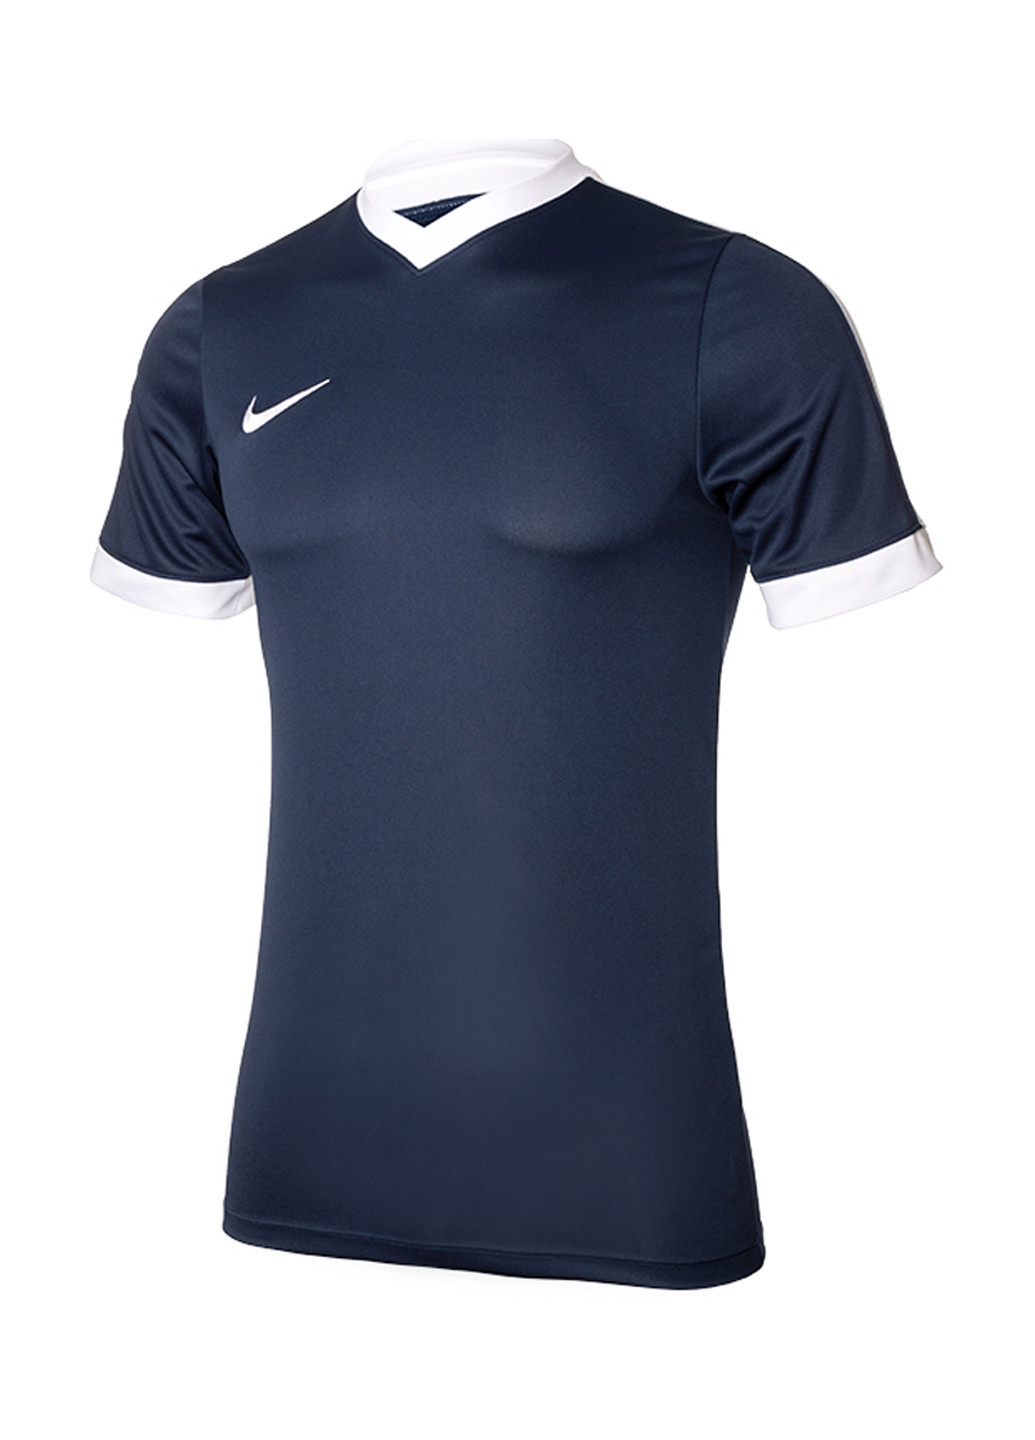 Темно-синяя футболка Nike Striker IV